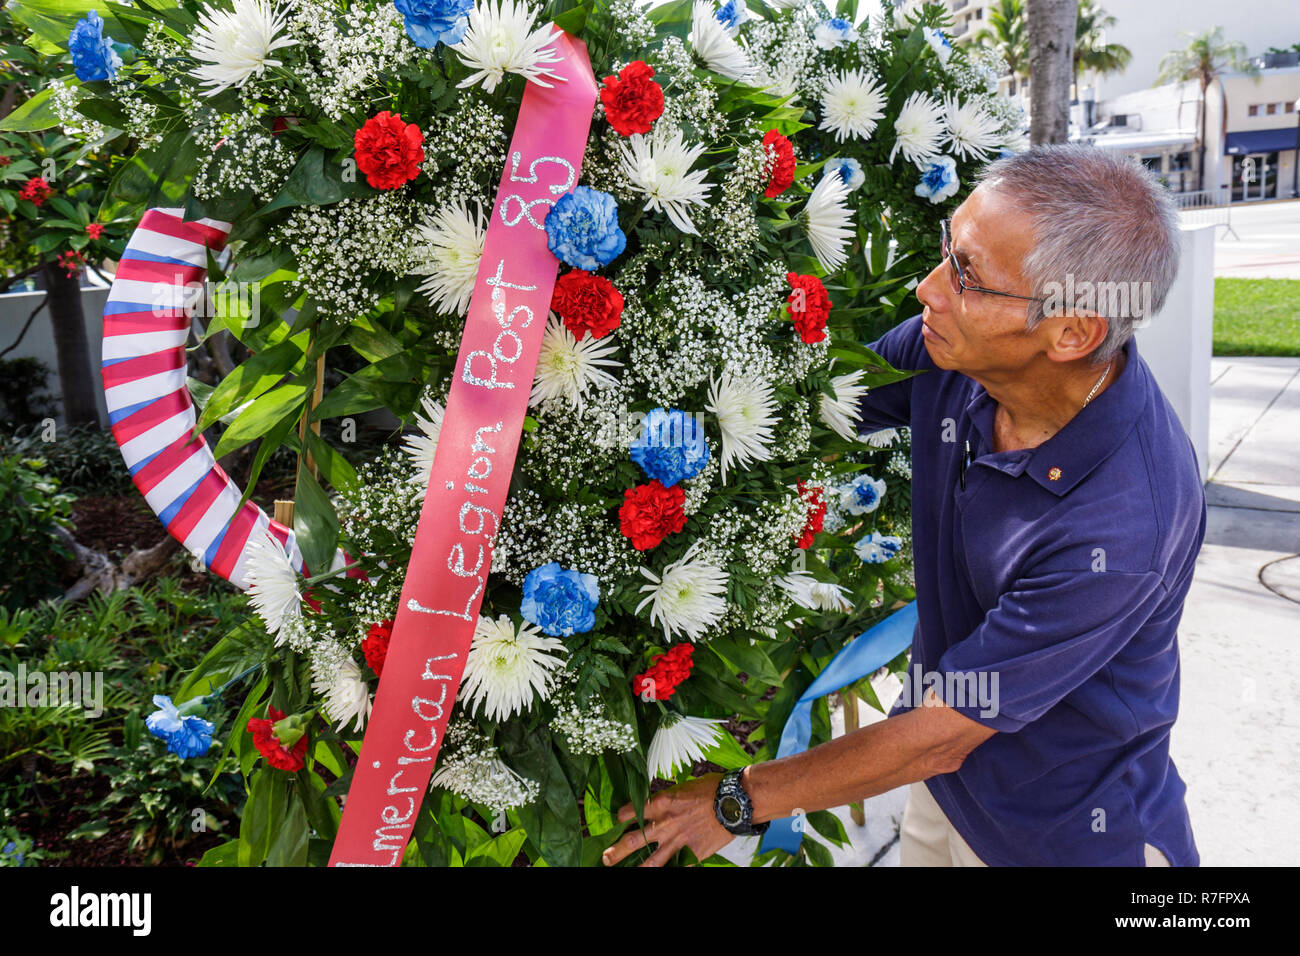 Miami Beach Florida, Polizeiwache, Gedenkfeiertag, Bundesfeiertag, Ehre, gedenken gefallener Soldaten, Tote, asiatischer Mann Männer Erwachsene Erwachsene, Krieg ve Stockfoto